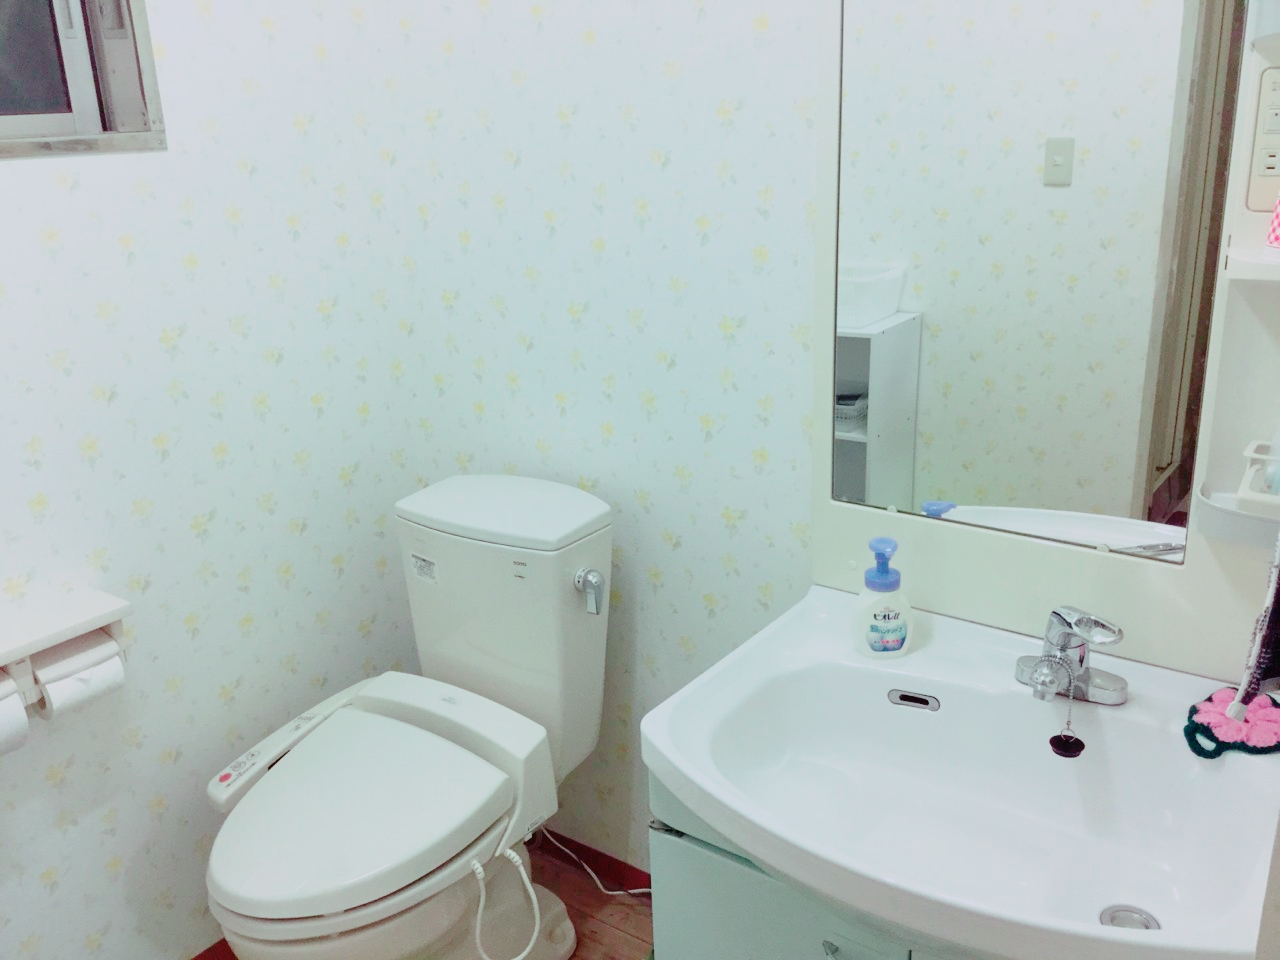 ツイン・ファミリールームのトイレと洗面台